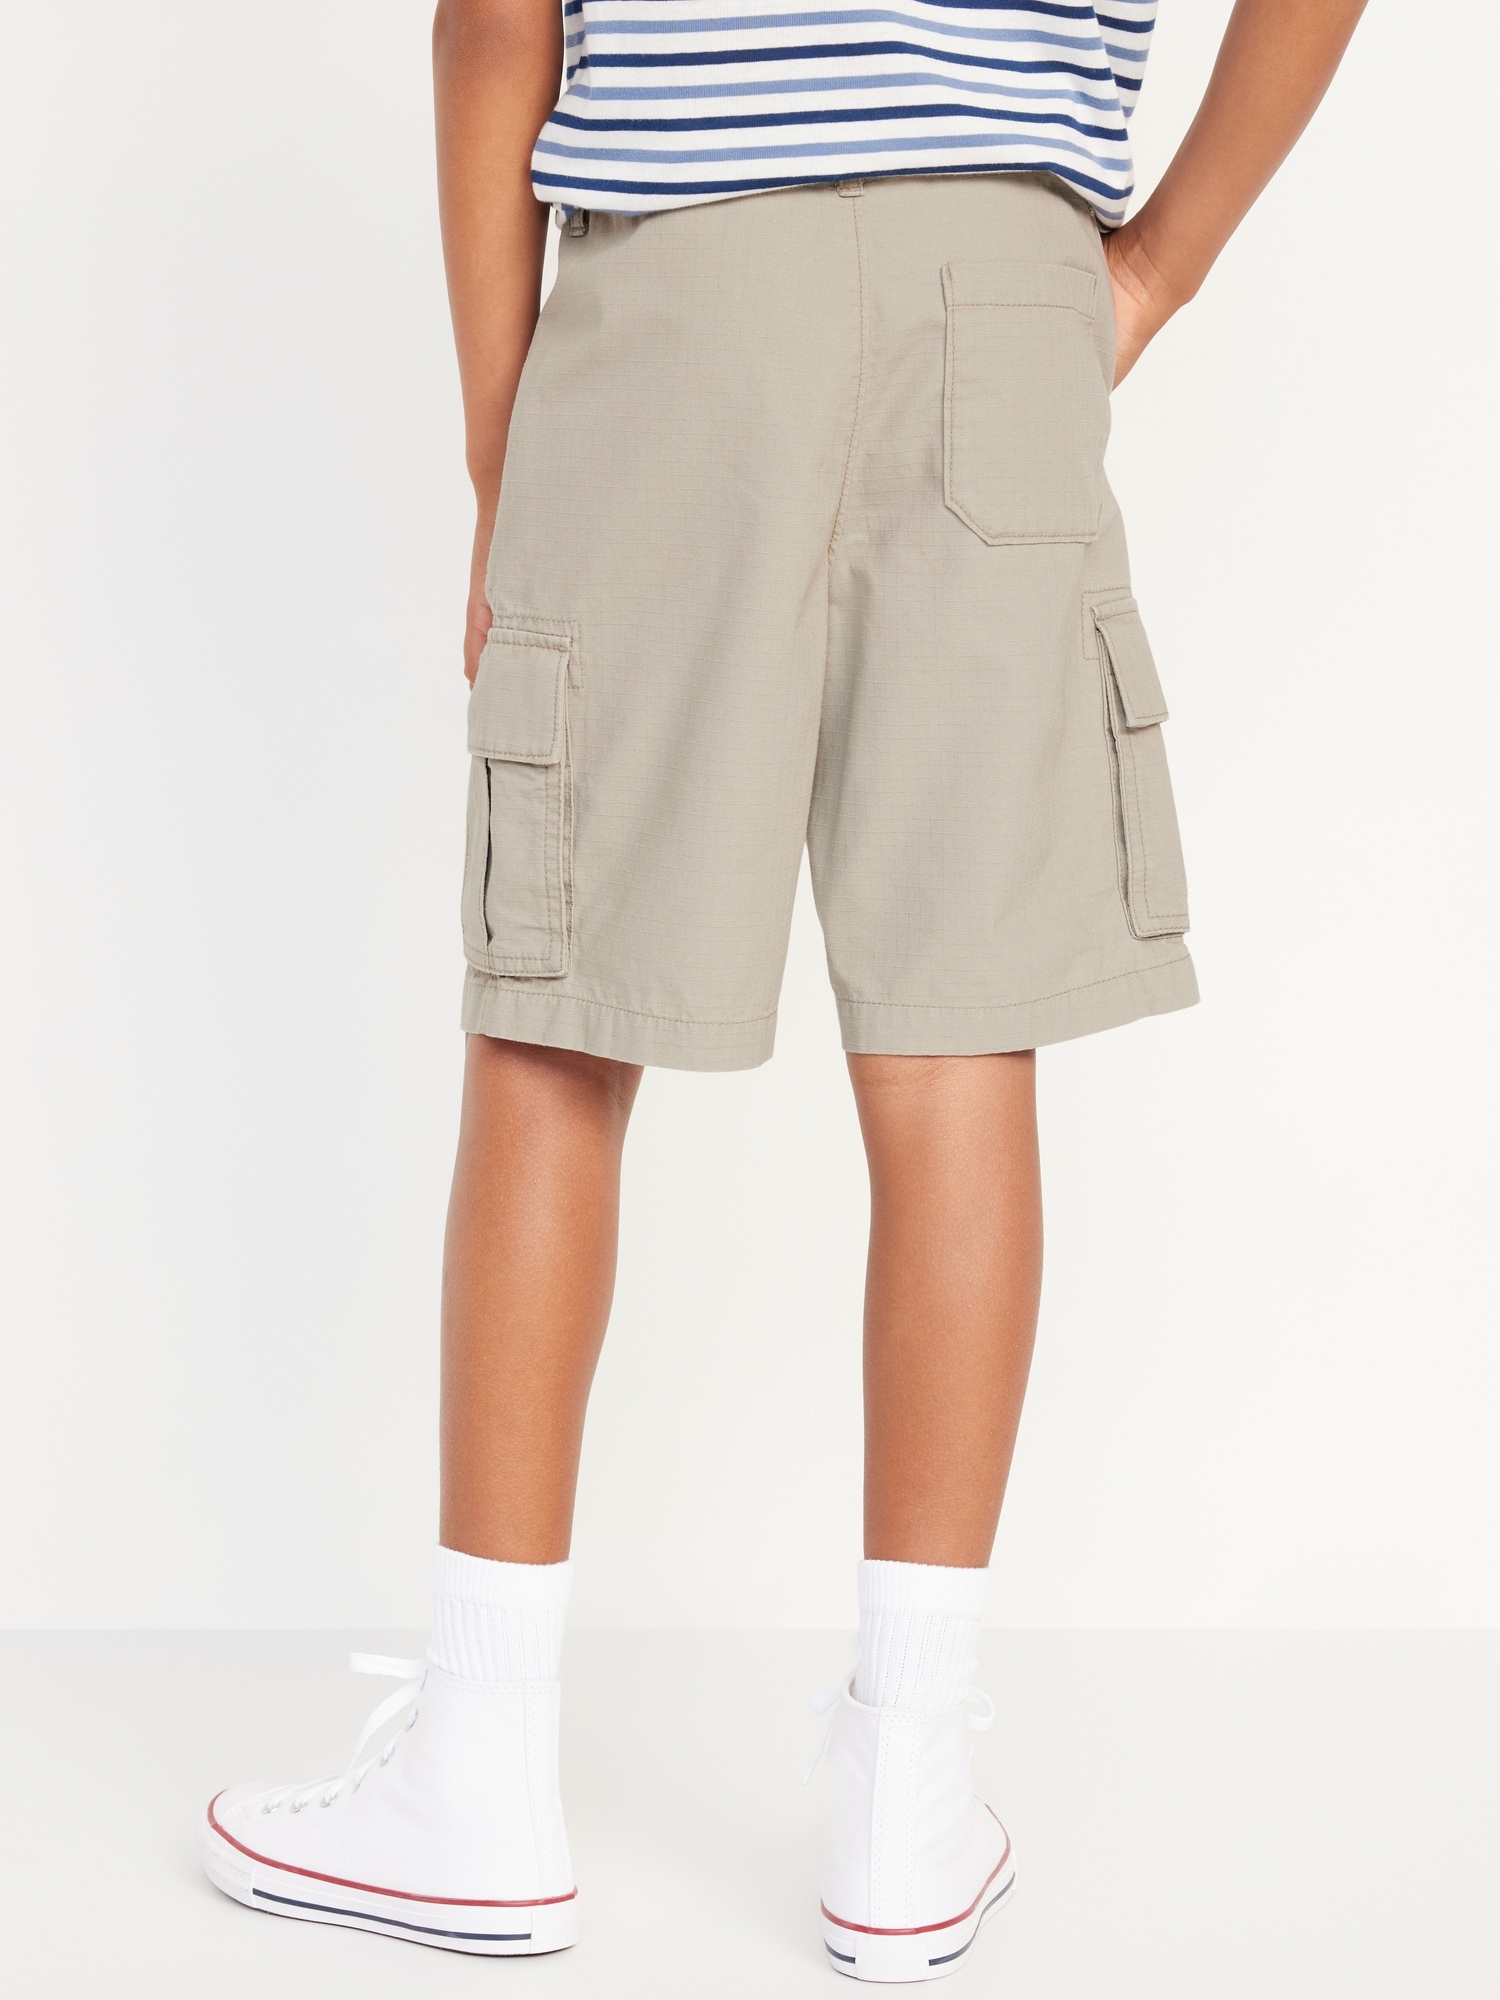 DONDUP KIDS belted cotton cargo shorts - Neutrals